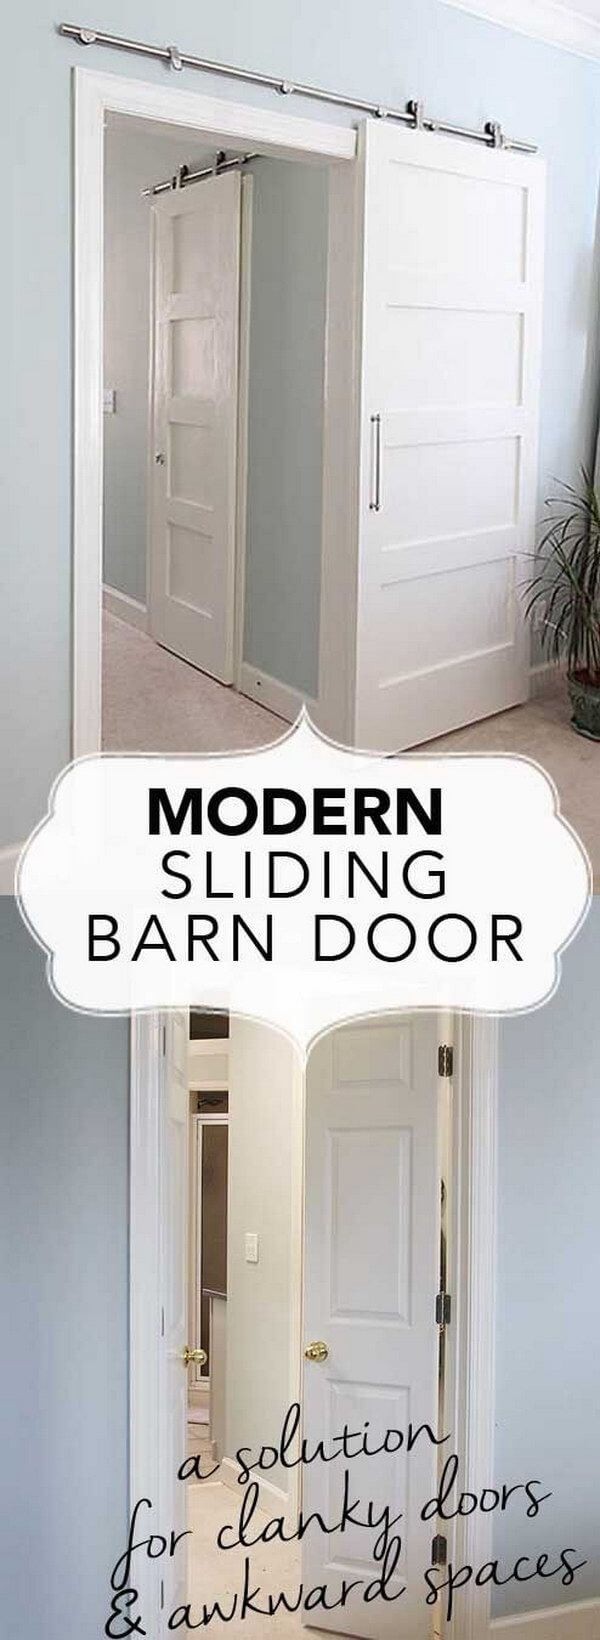 12.Barn door: le porte scorrevoli d'ispirazione campestre sono una soluzione economica, bella e salvaspazio